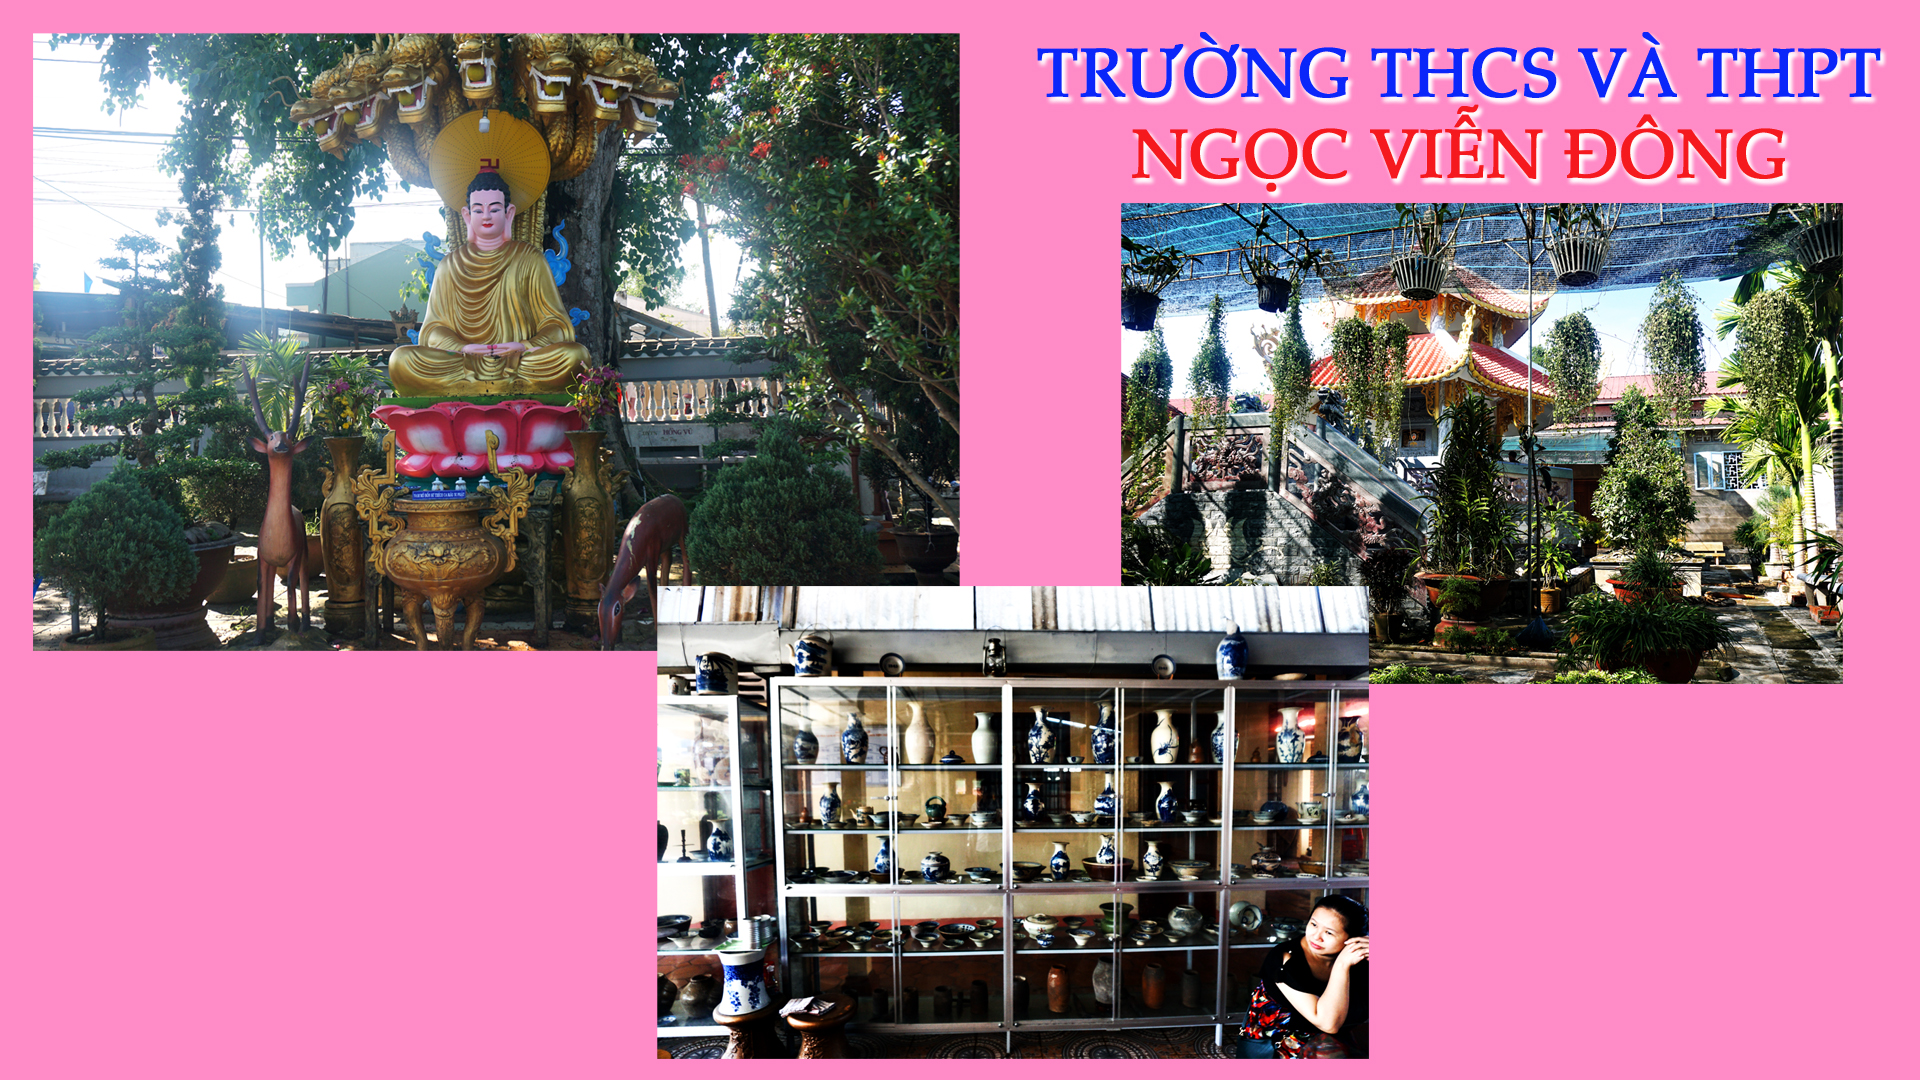 Học sinh trường THCS và THPT Ngọc Viễn Đông tham quan chùa Tiên Châu tỉnh Vĩnh Long